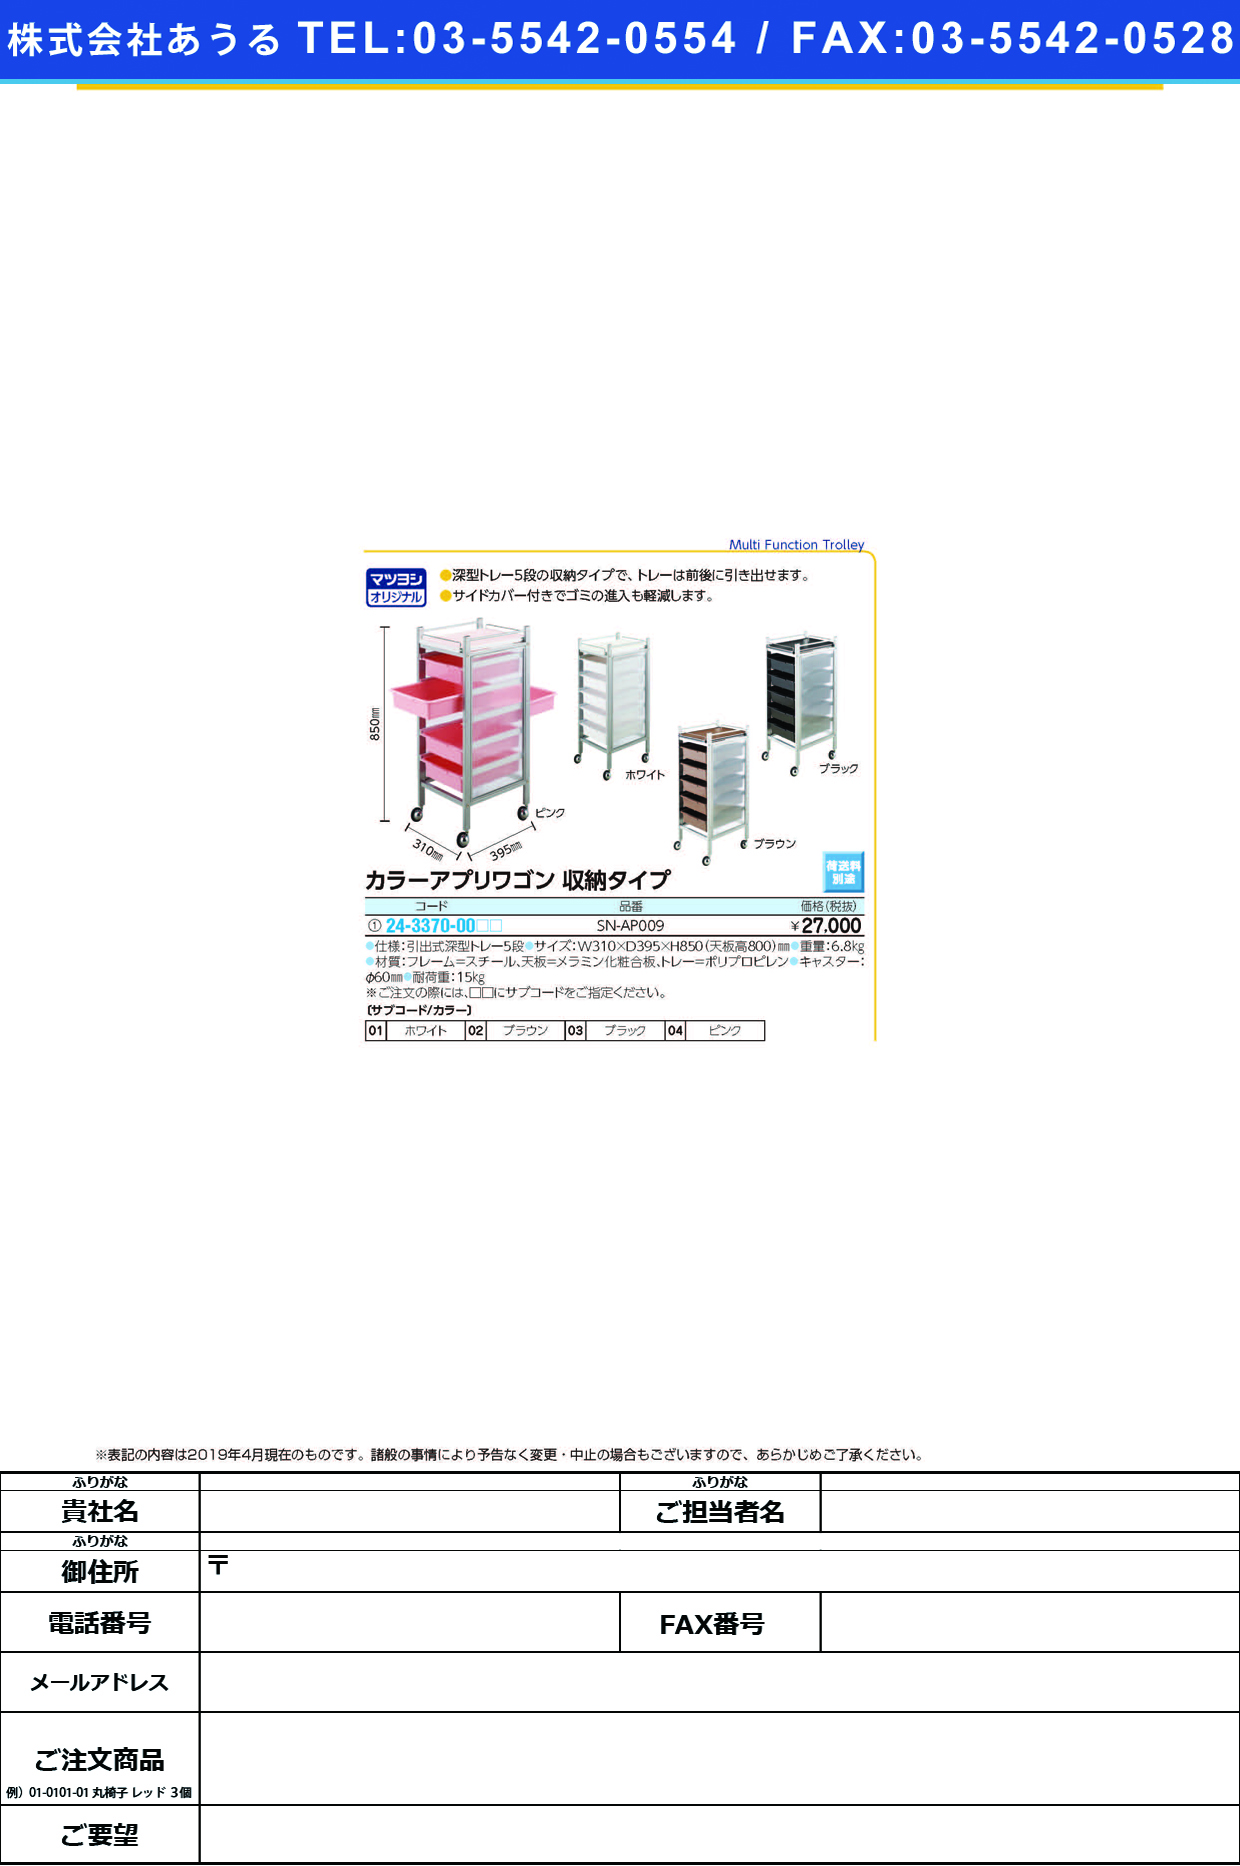 (24-3370-00)カラーアプリワゴン（収納タイプ） SN-AP009 ｶﾗｰｱﾌﾟﾘﾜｺﾞﾝｼｭｳﾉｳﾀｲﾌﾟ ホワイト【1台単位】【2019年カタログ商品】